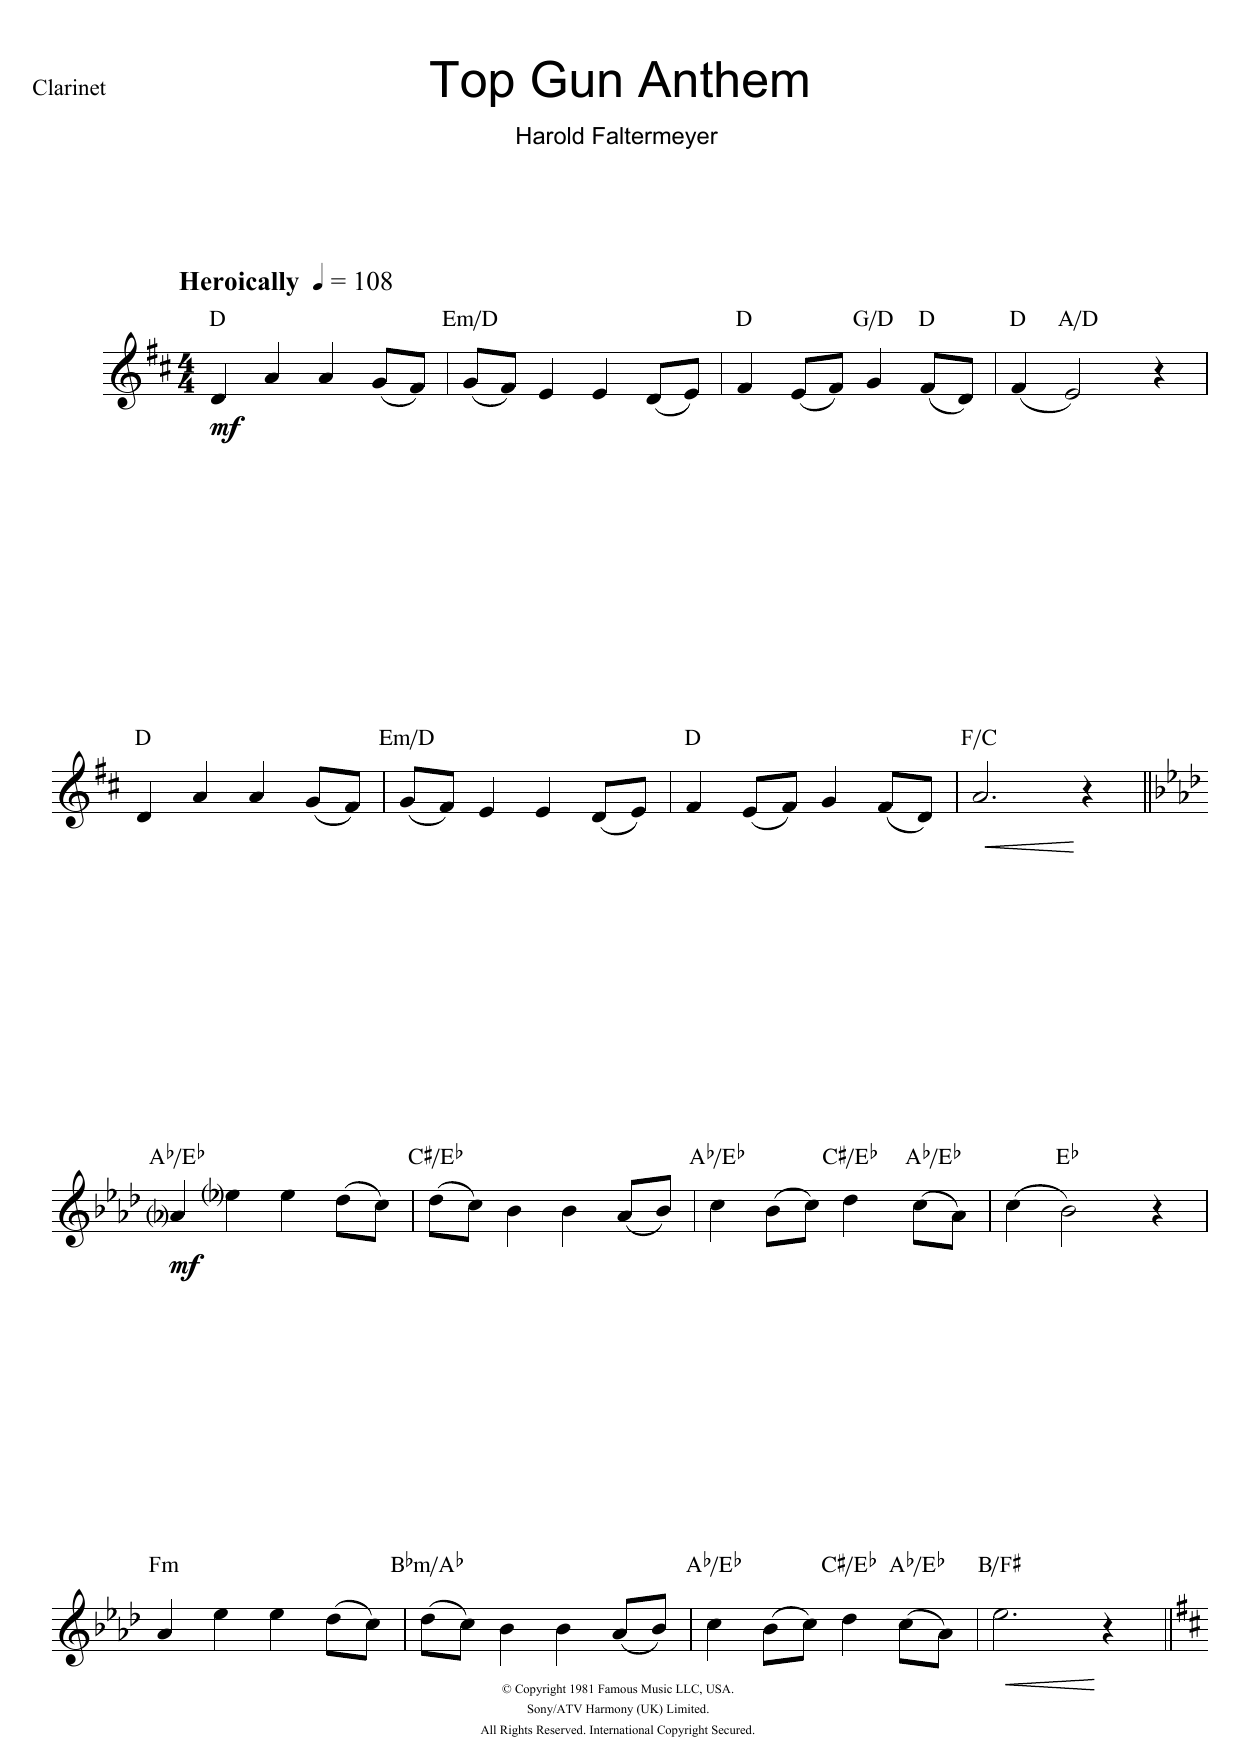 Harold Faltermeyer Top Gun Anthem Sheet Music Notes & Chords for Piano - Download or Print PDF